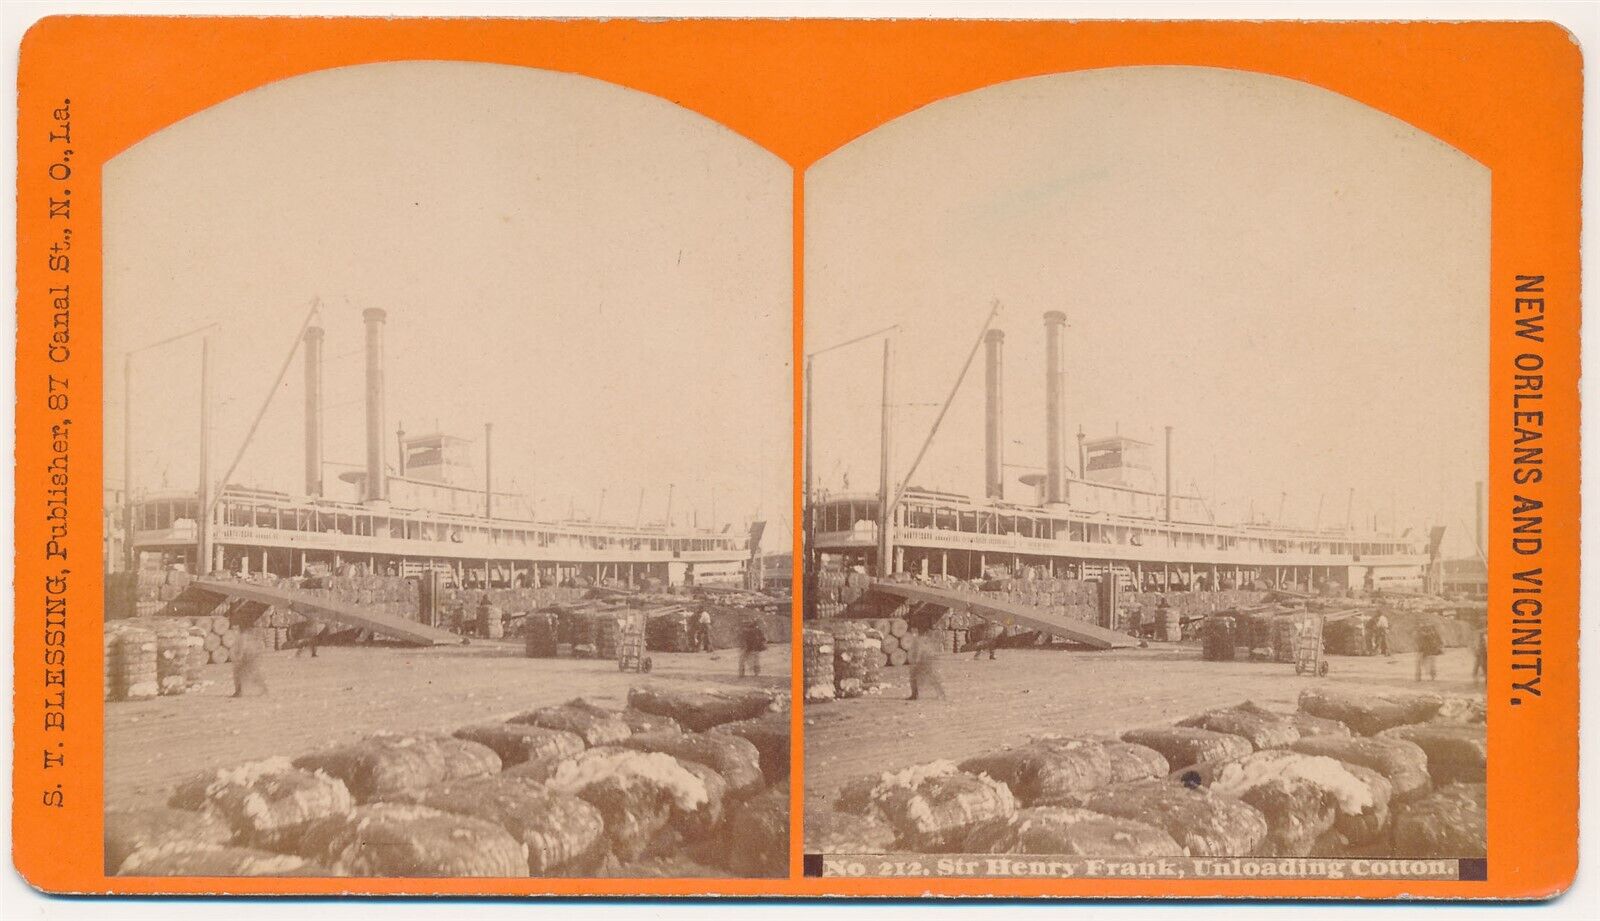 LOUISIANA SV - New Orleans - Steamer Henry Frank - ST Blessing 1880s